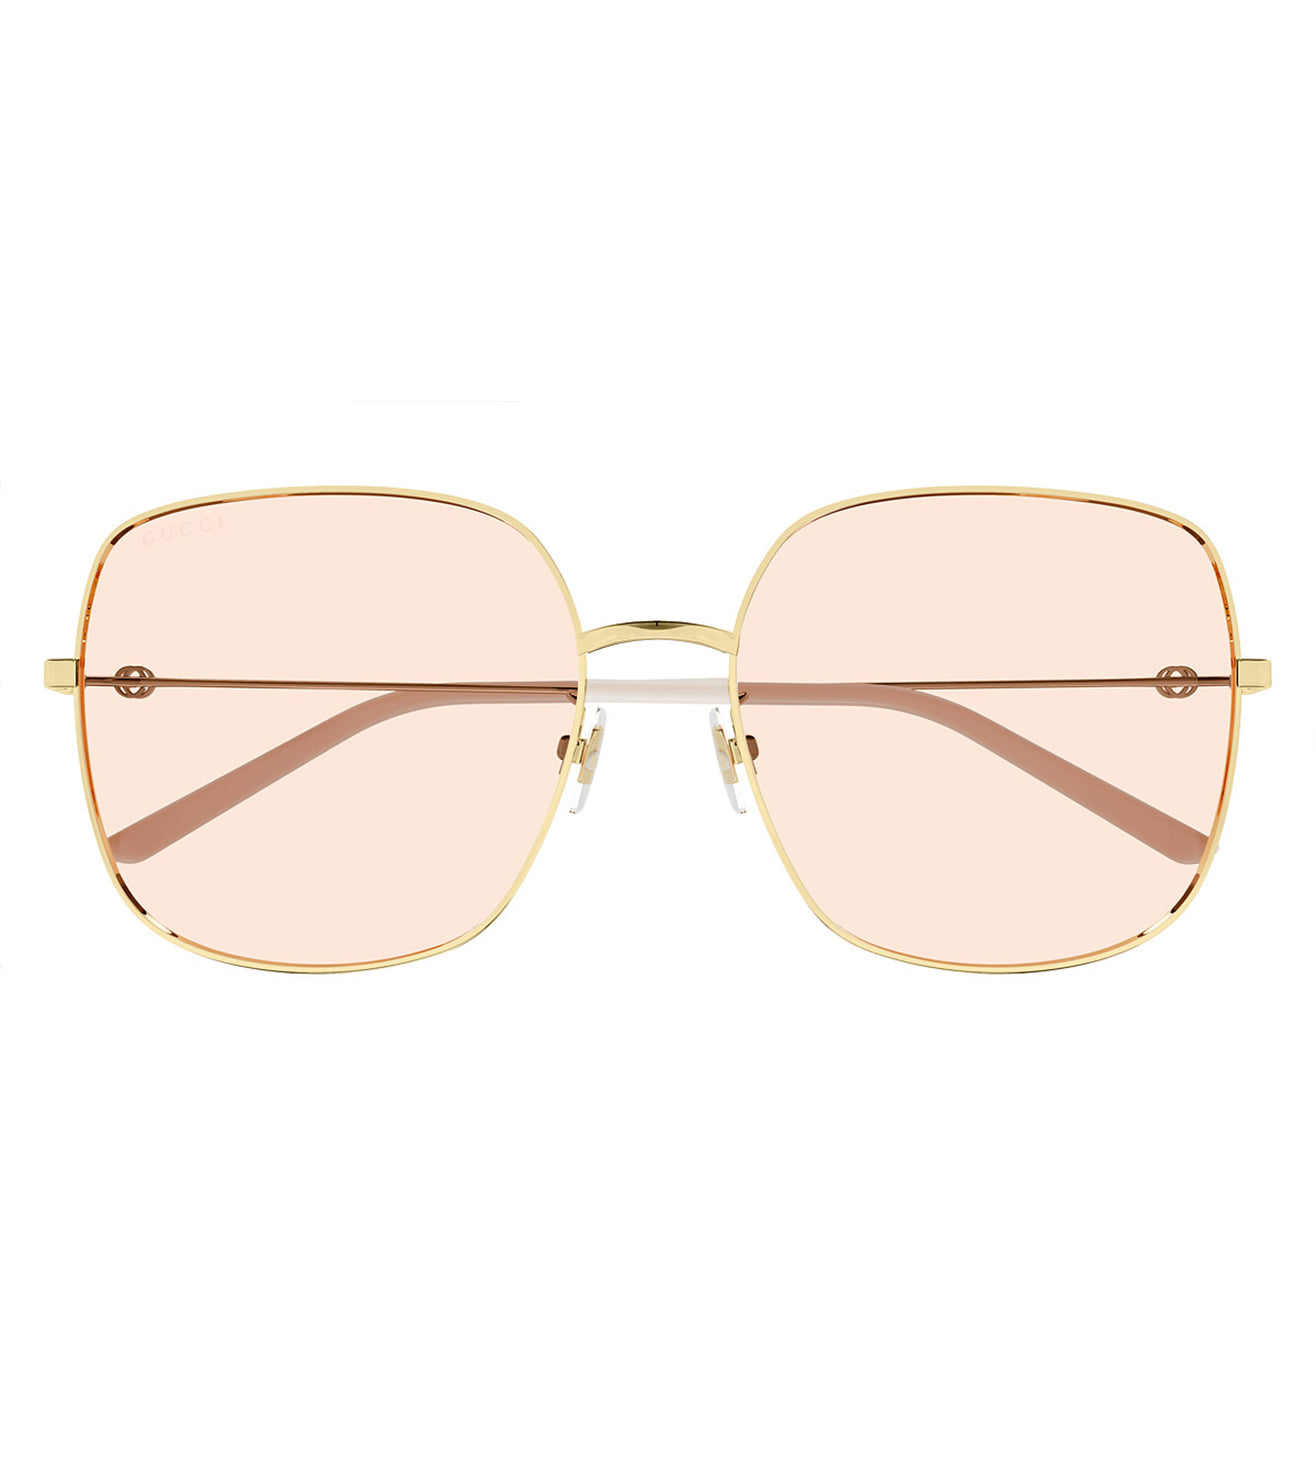 Gucci Women's Pink Square Sunglasses